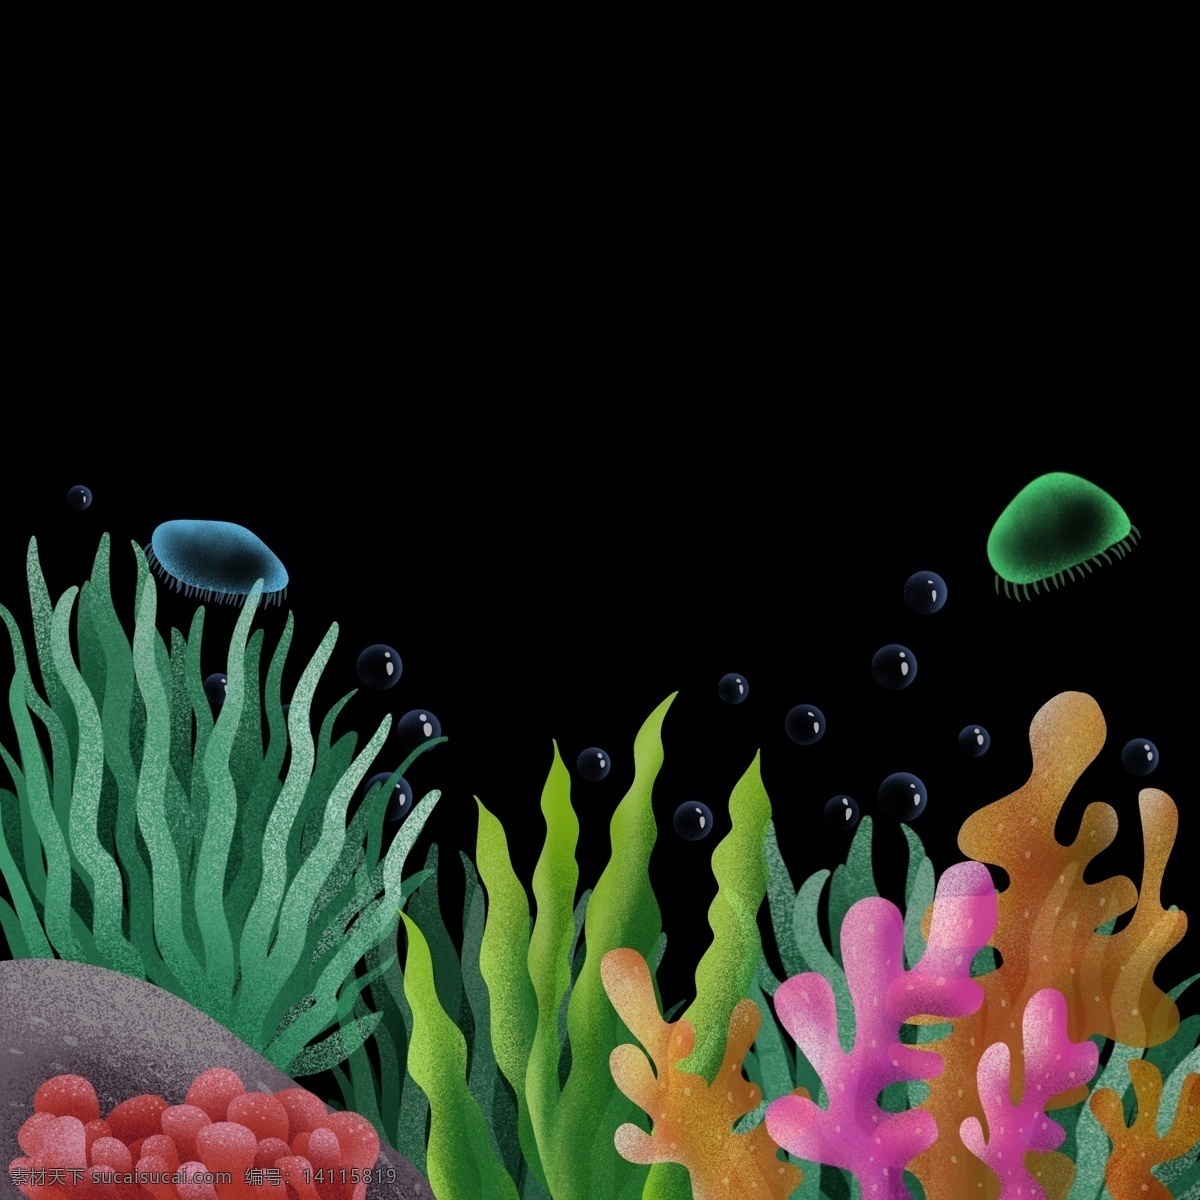 夏日 海底 植物 免 抠 图 夏日海底植物 绿色植物 清新夏日 海底珊瑚